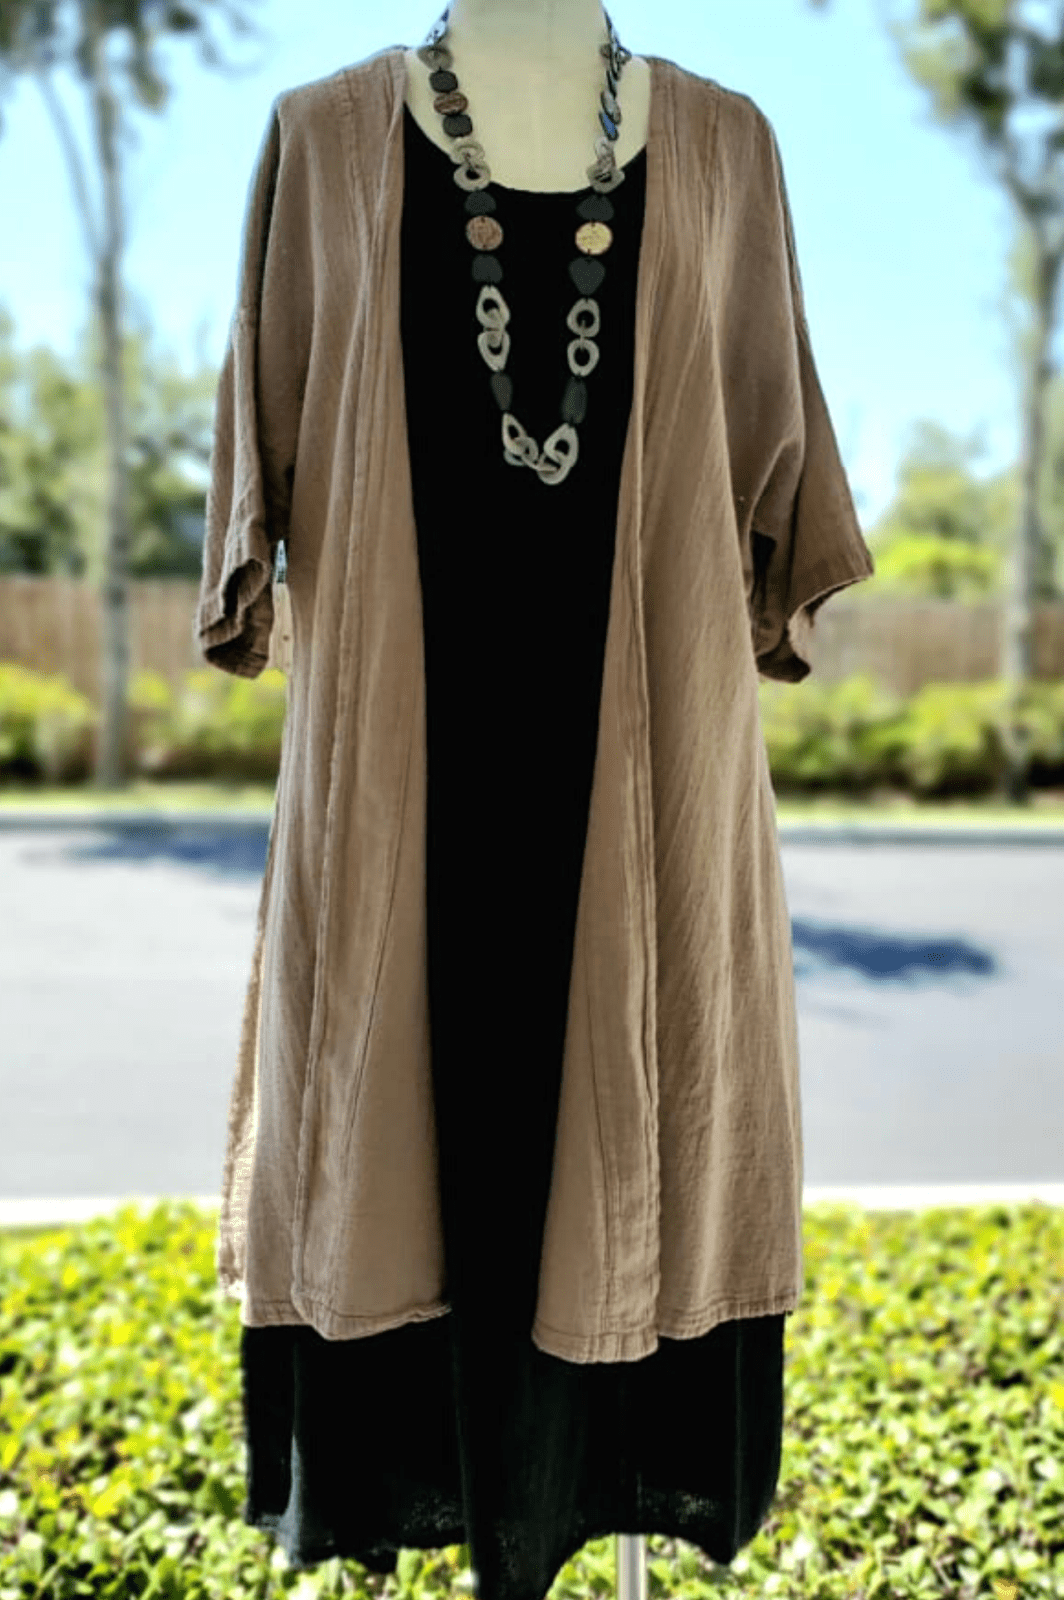 The Gabs Kimono Style Jacket 100% Cotton Gauze